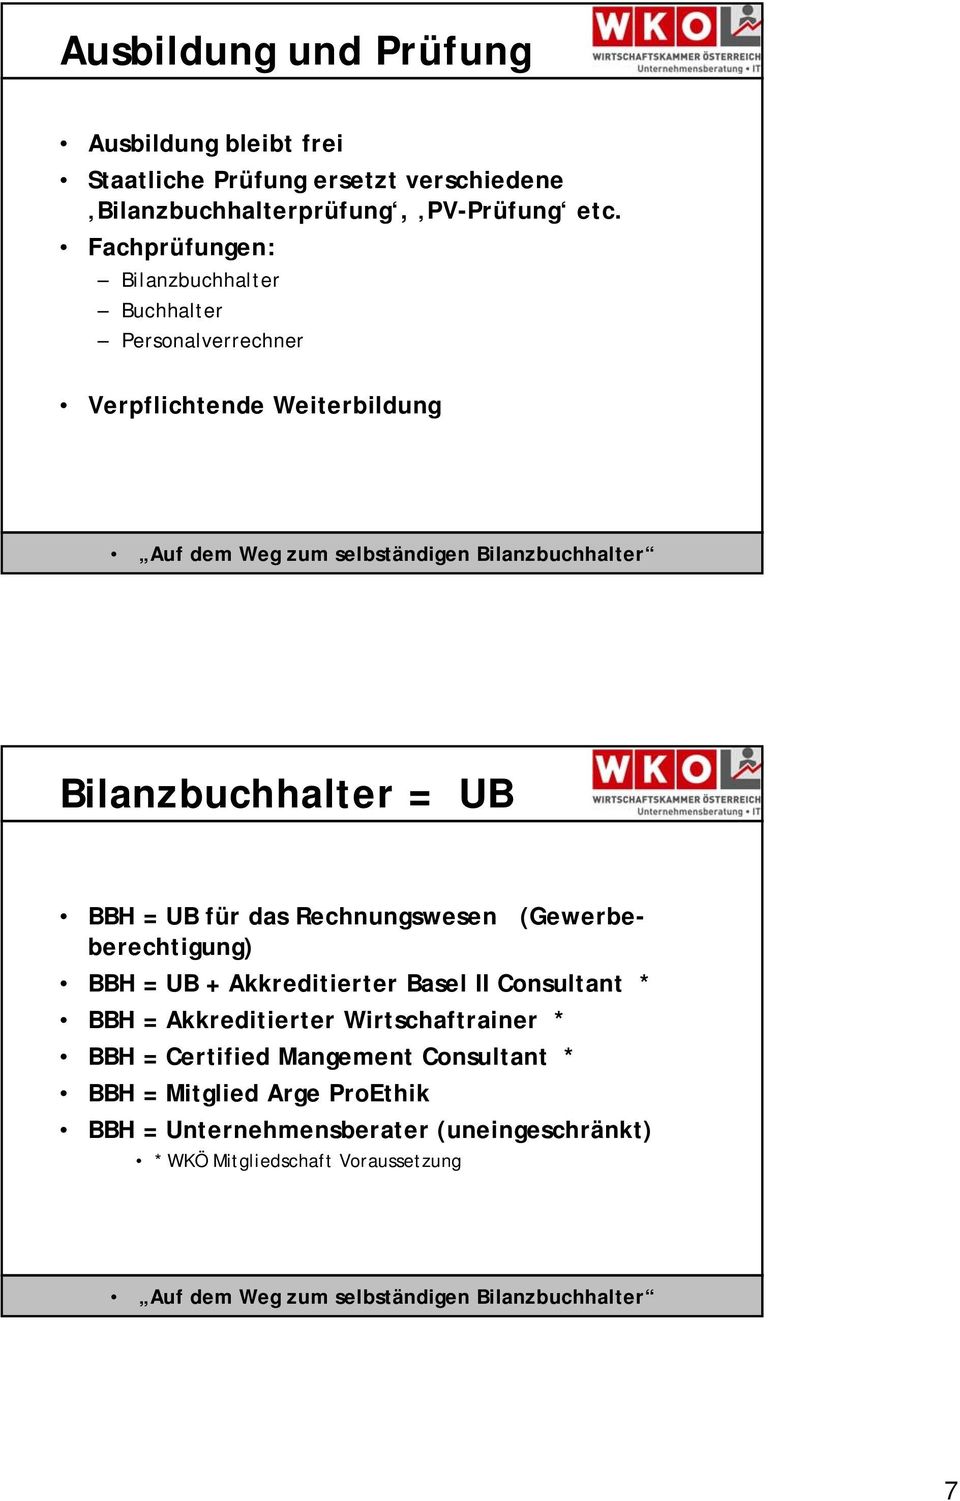 Rechnungswesen (Gewerbeberechtigung) BBH = UB + Akkreditierter Basel II Consultant * BBH = Akkreditierter Wirtschaftrainer * BBH =